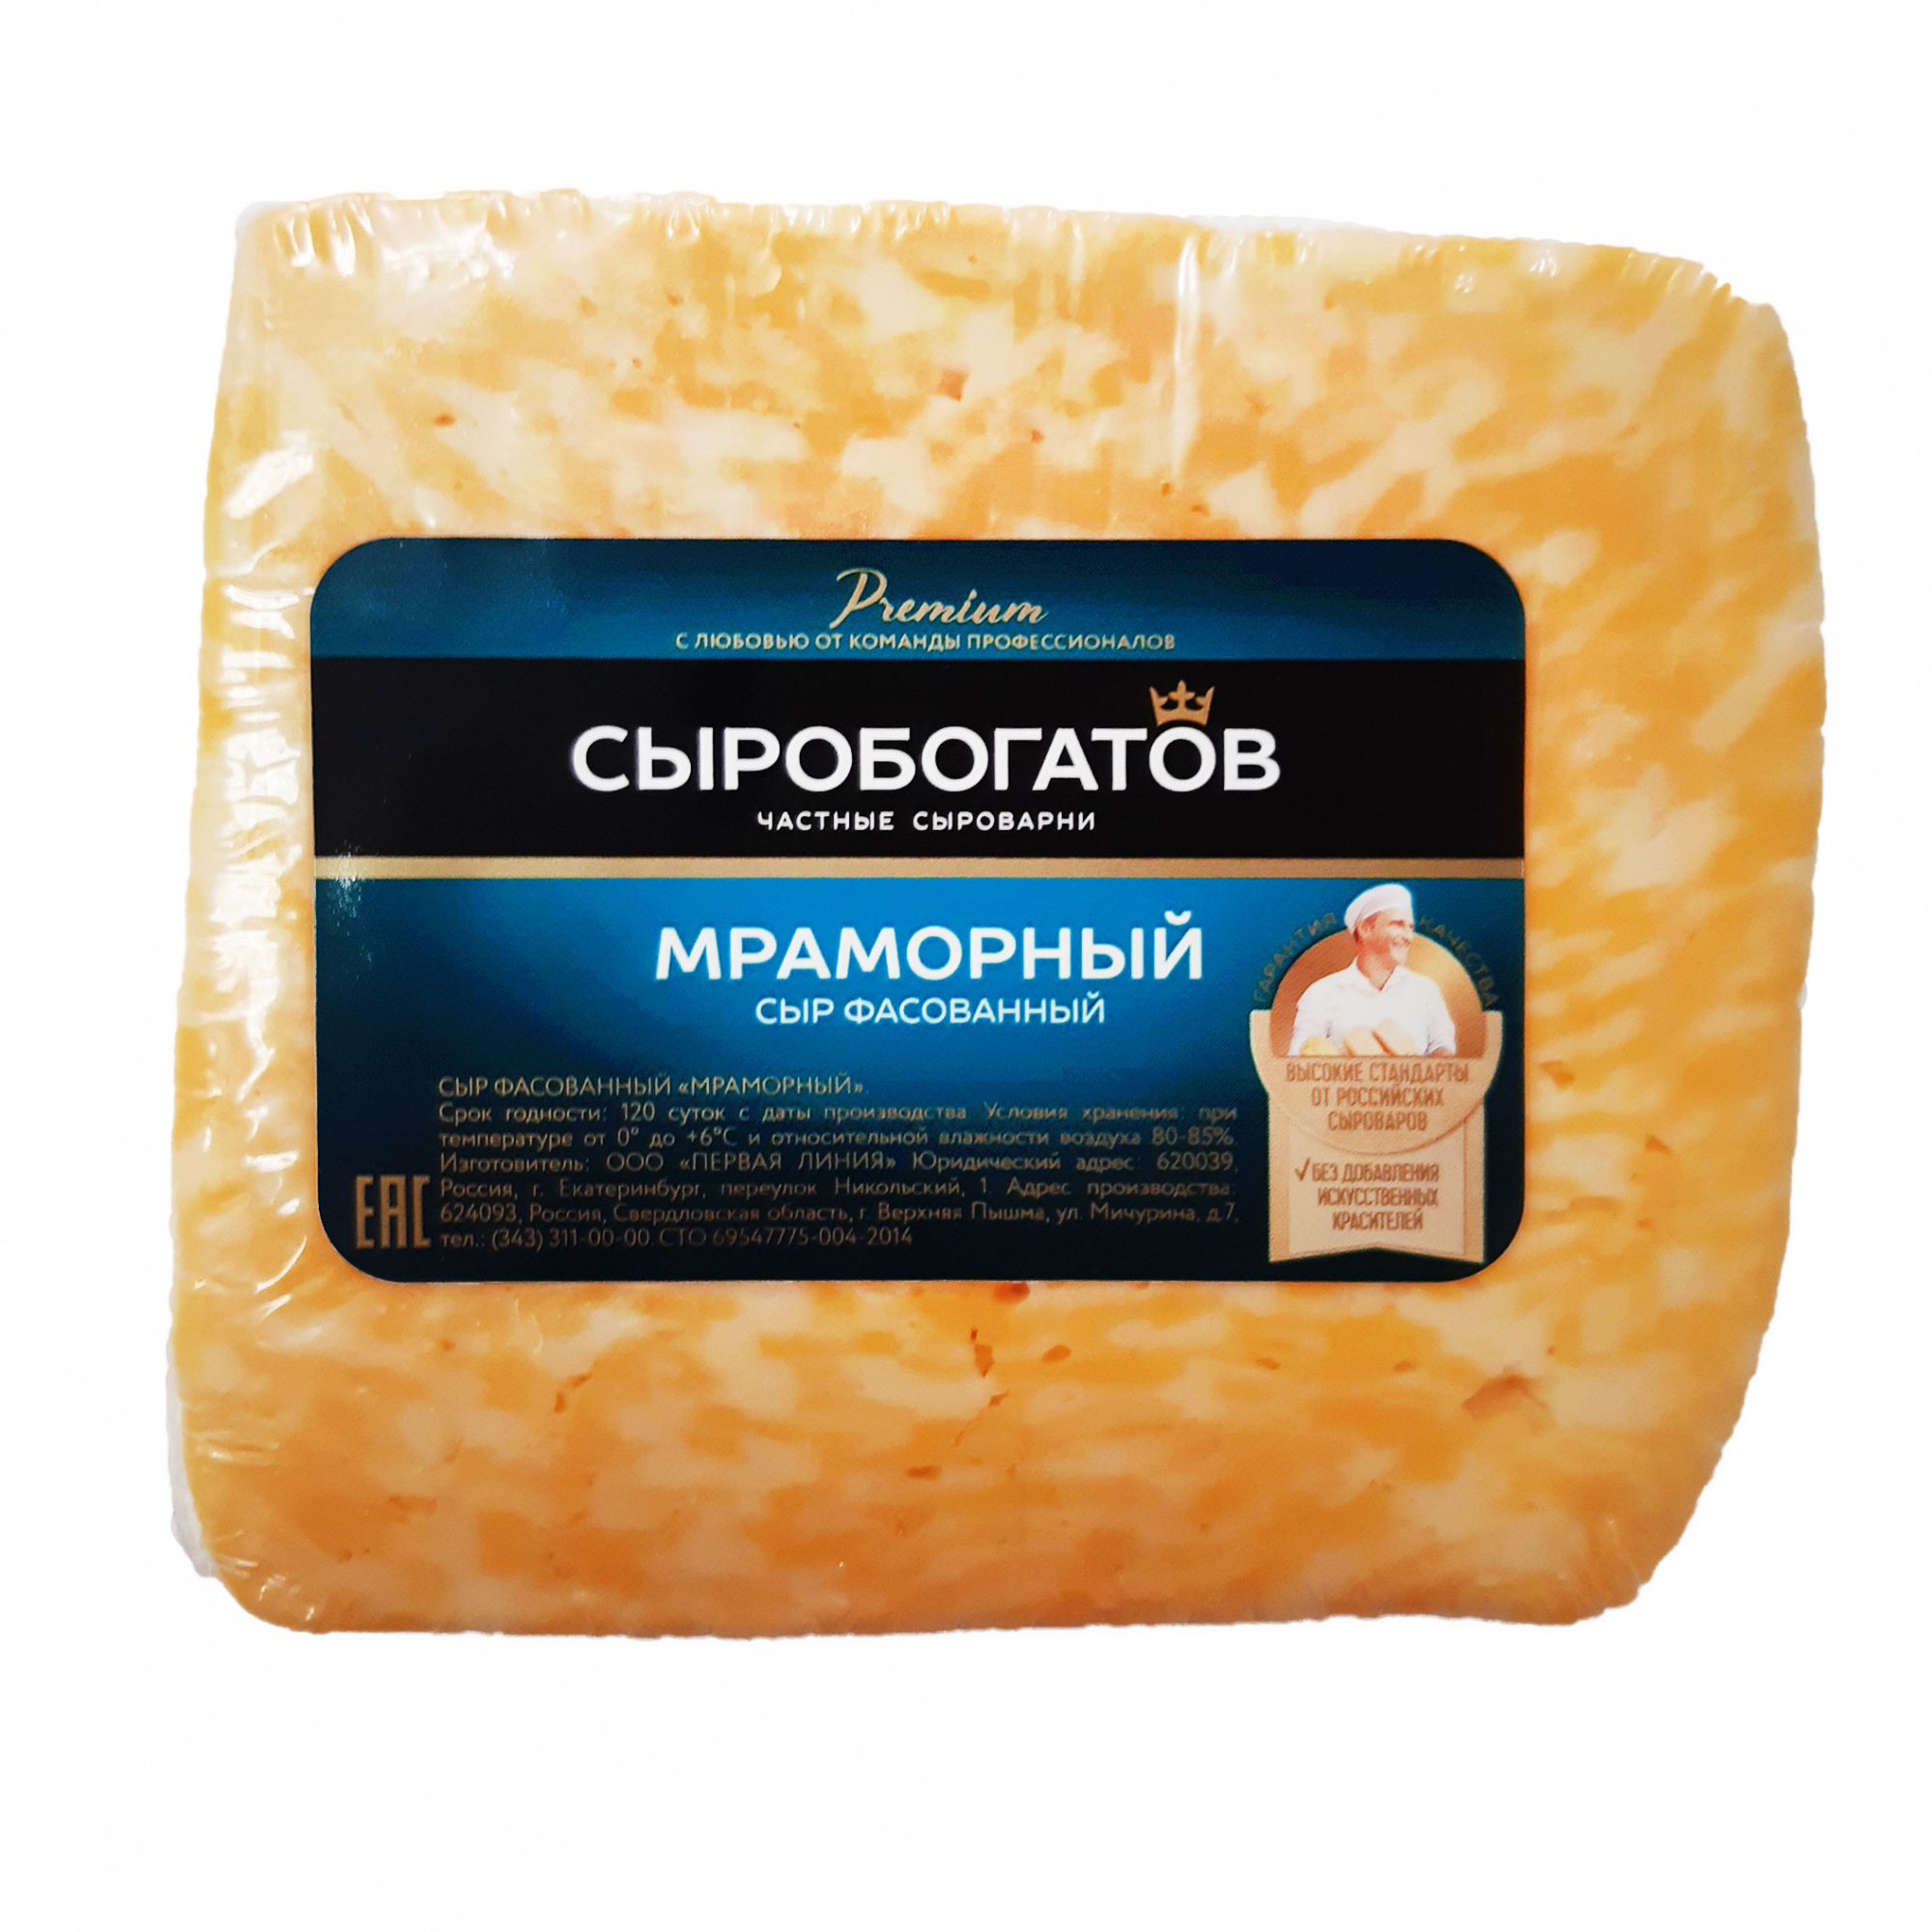 Сыр фасованный "Мраморный", ТМ "Сыробогатов"